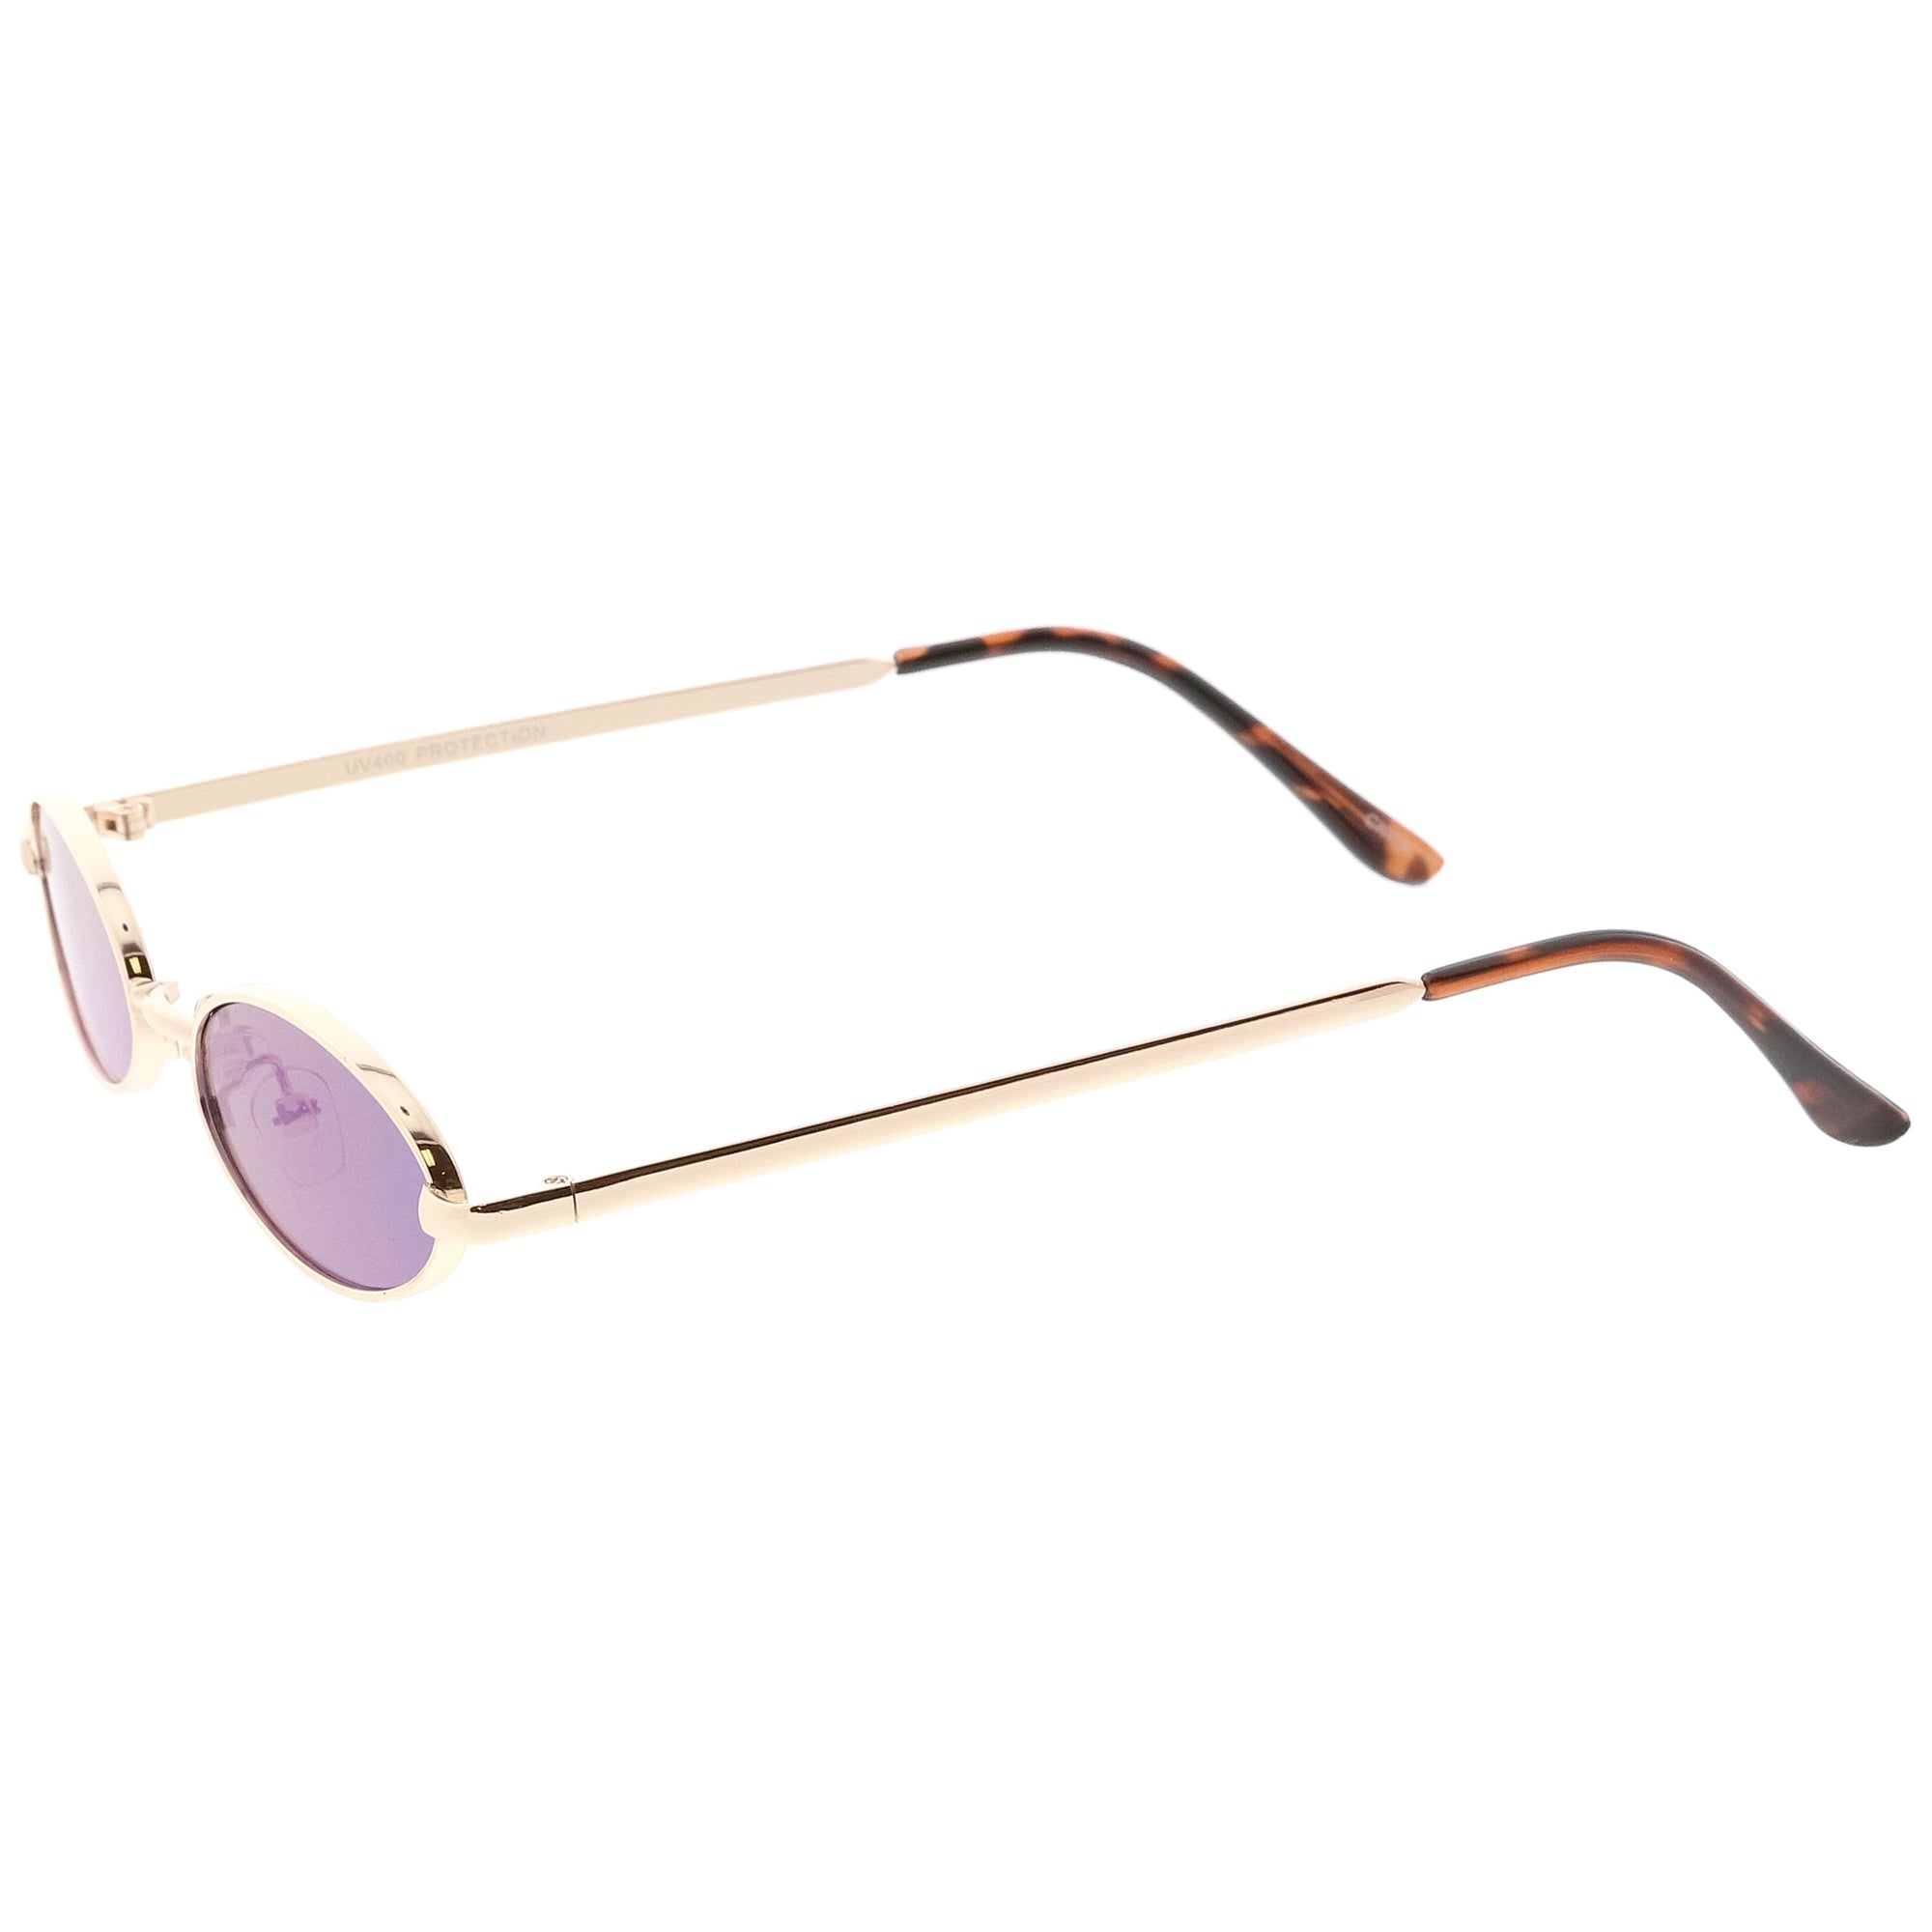 Small Retro 1990s Oval Metal Mirrored Lens Sunglasses Zerouv 